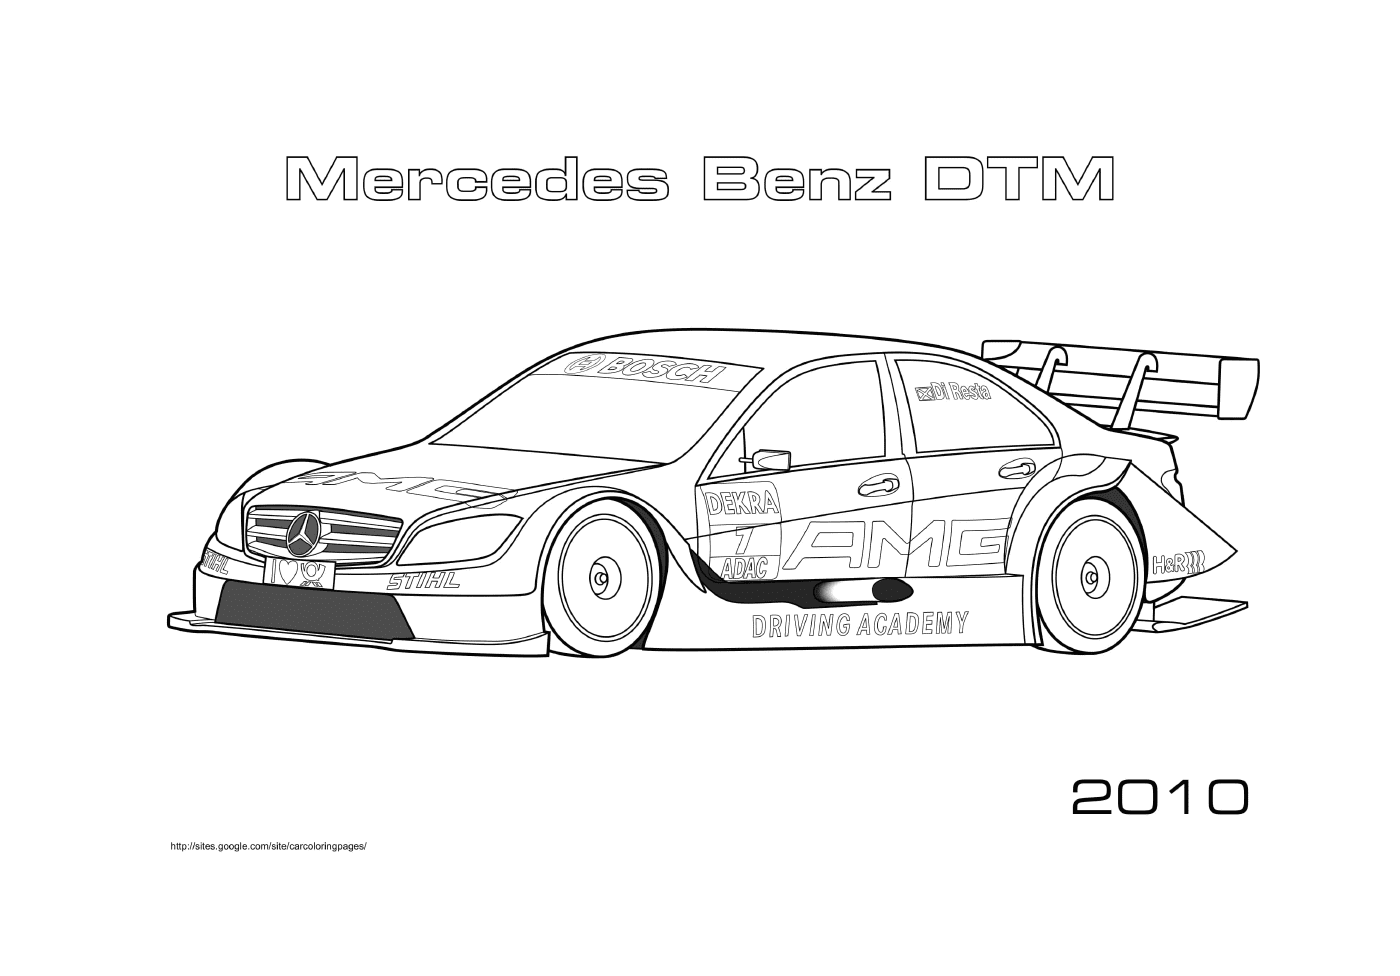  Mercedes Mercedes Benz DTM 2010, carro de corrida 